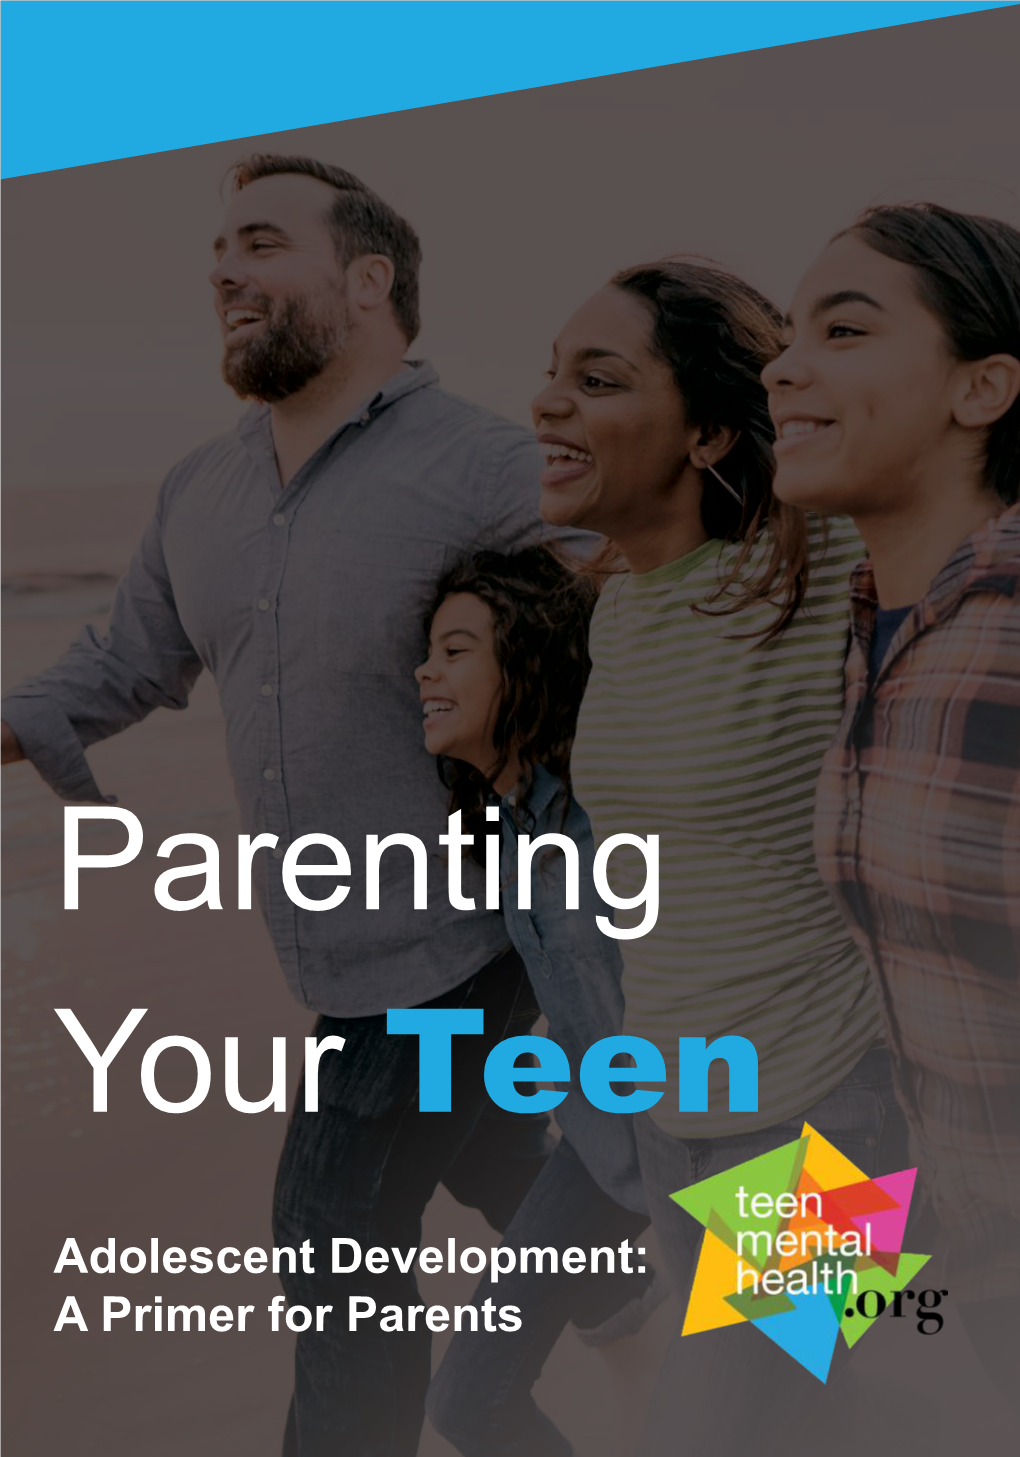 Adolescent Development: a Primer for Parents